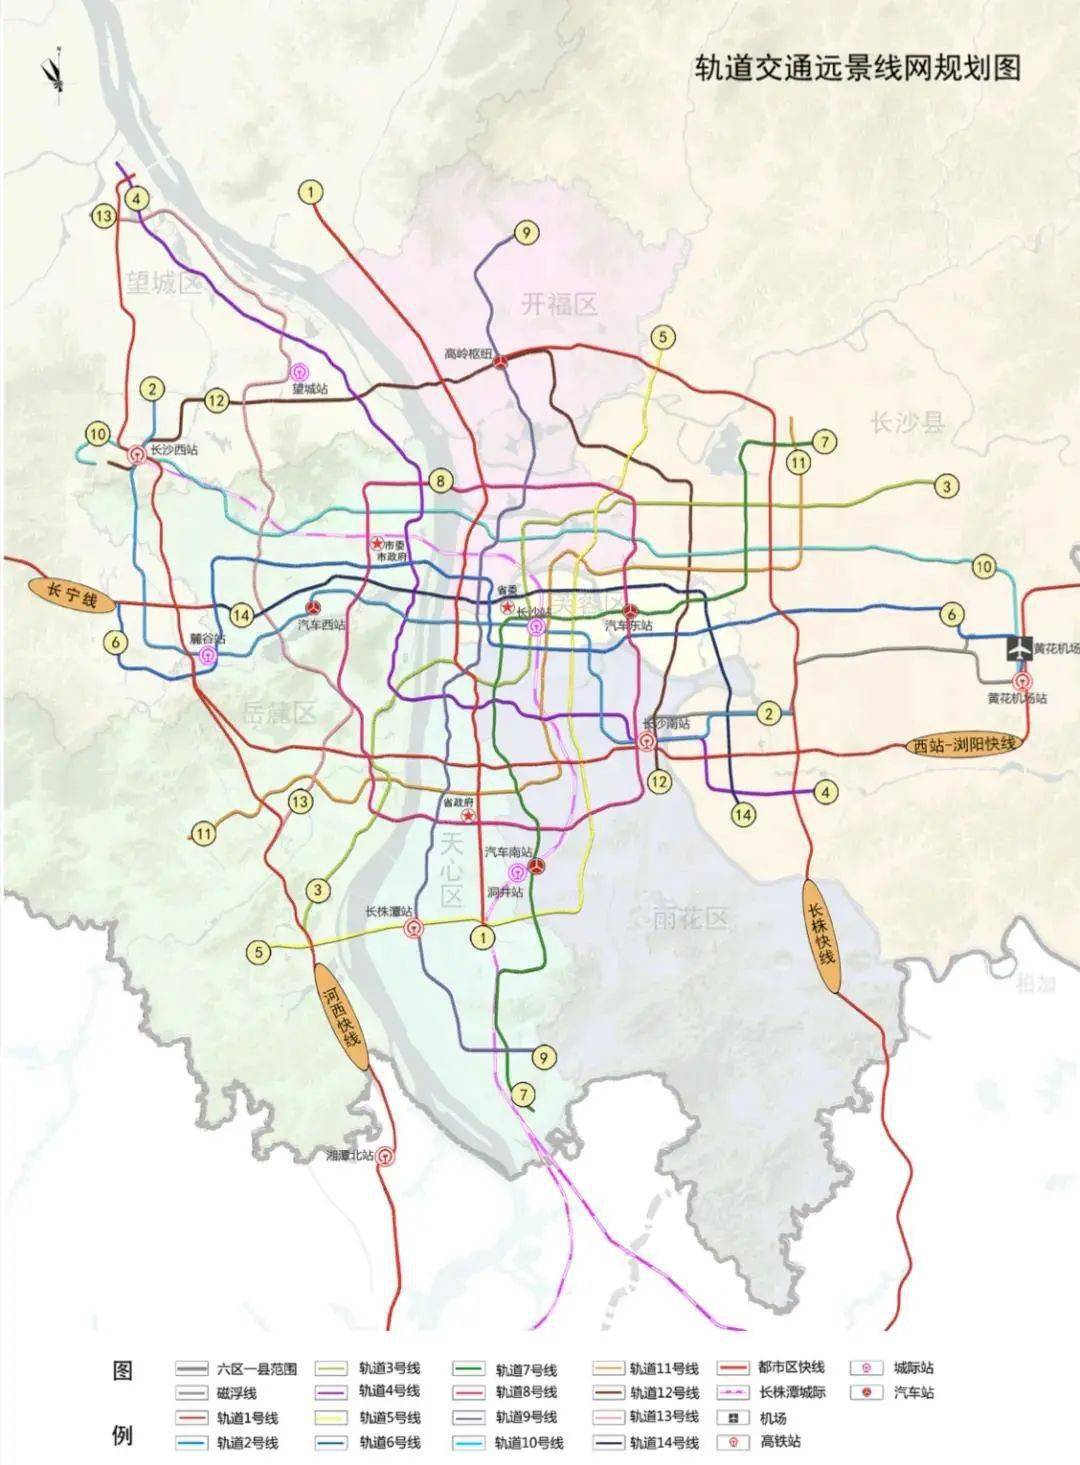 2035年的长沙交通有多便捷?17条轨交线路,还有一体化都市圈交通